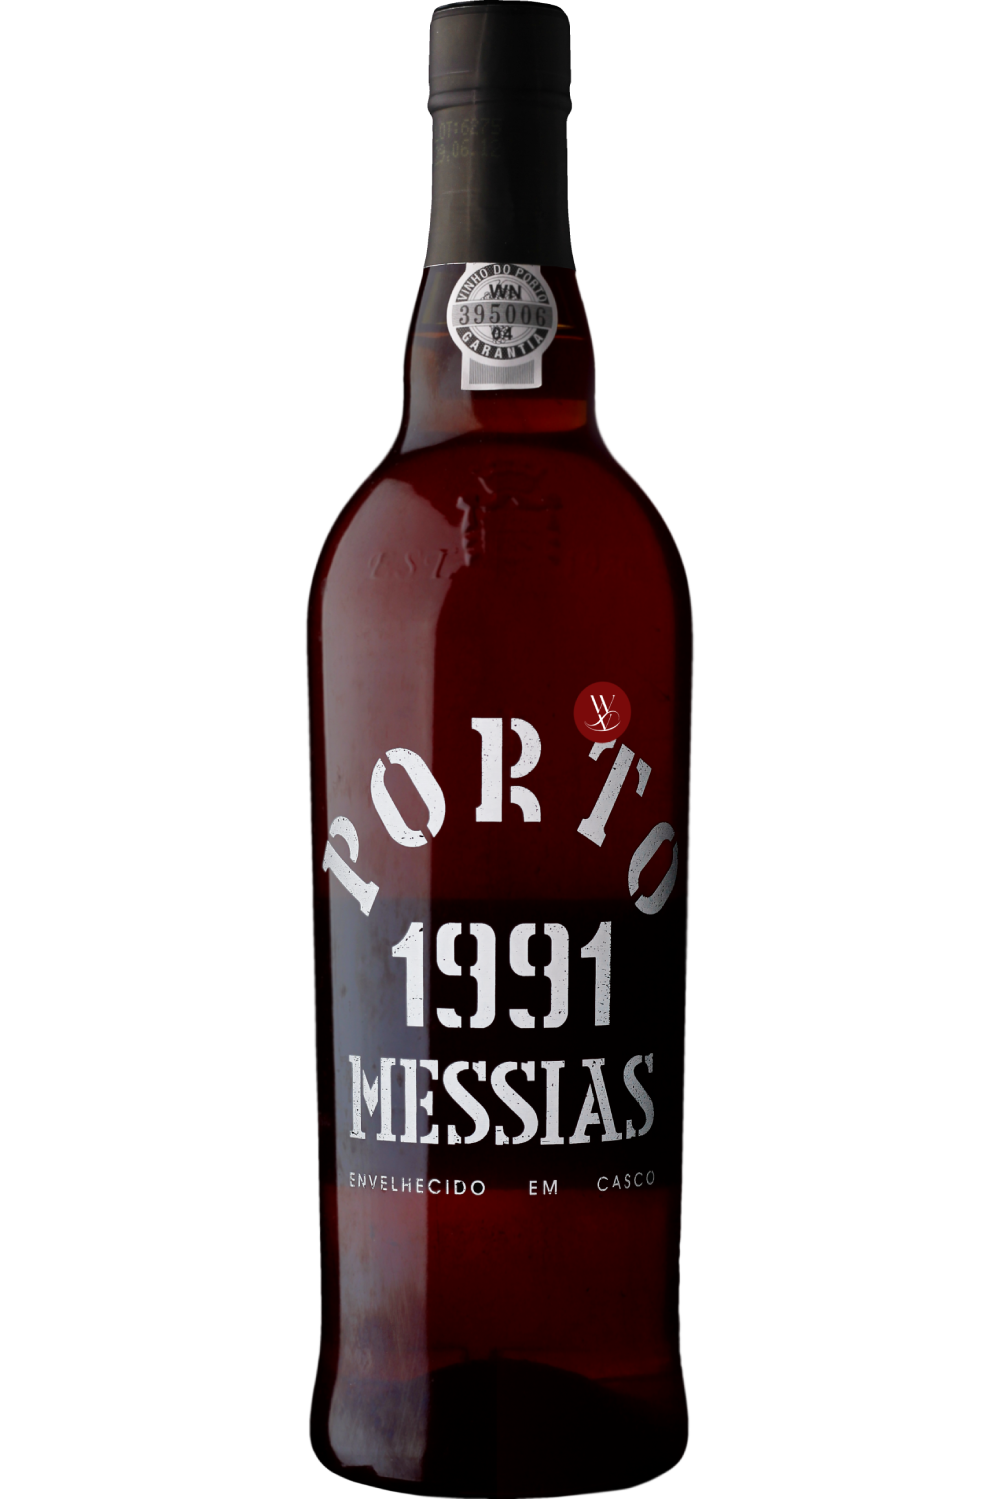 WineVins Porto Messias Colheita 1991